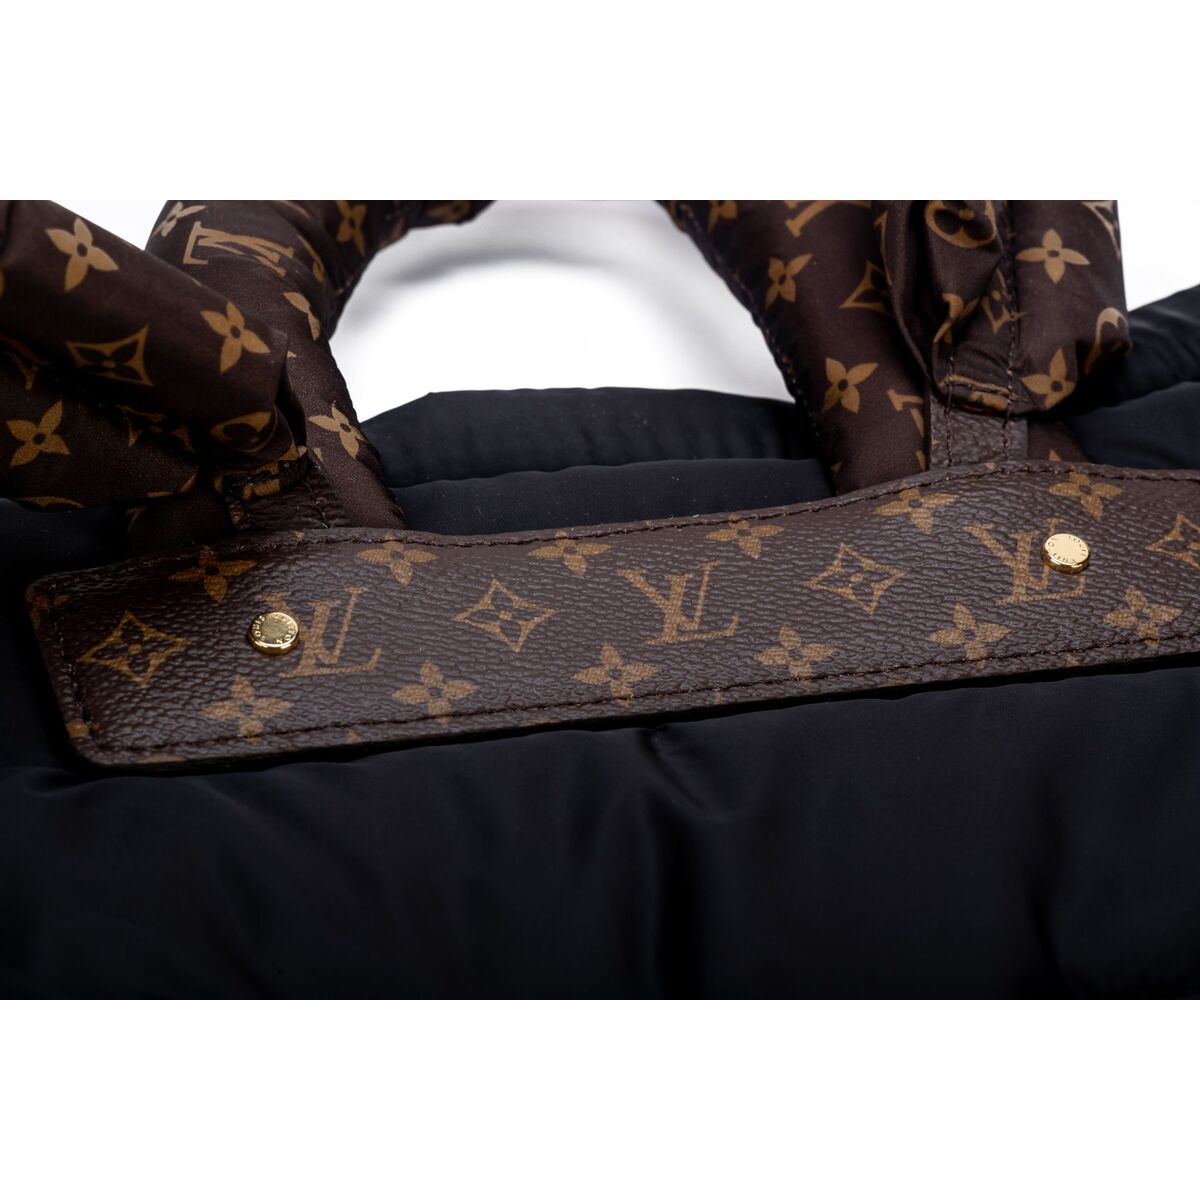 Louis Vuitton Vuitton Diaper Bag 